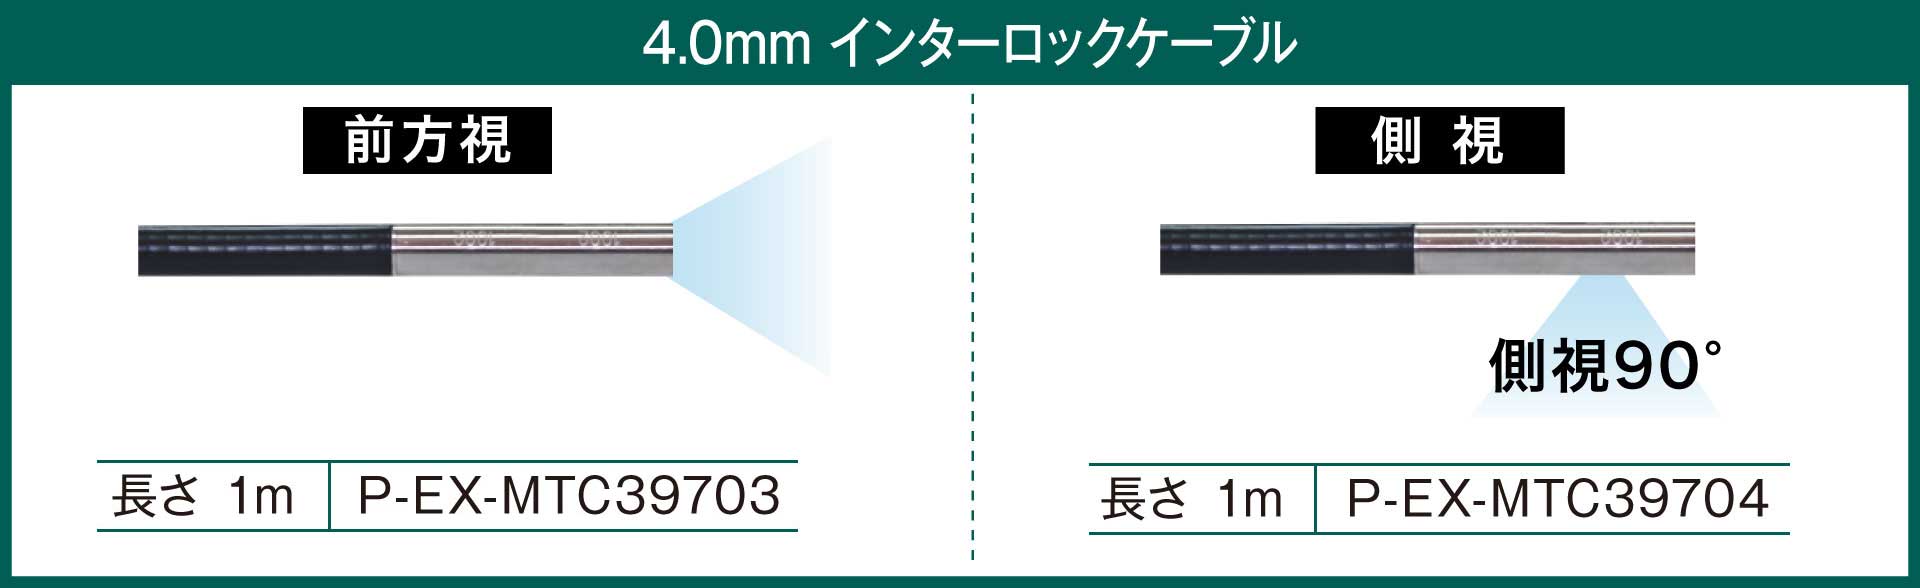 PRO3EX 4.0mm インターロックケーブル